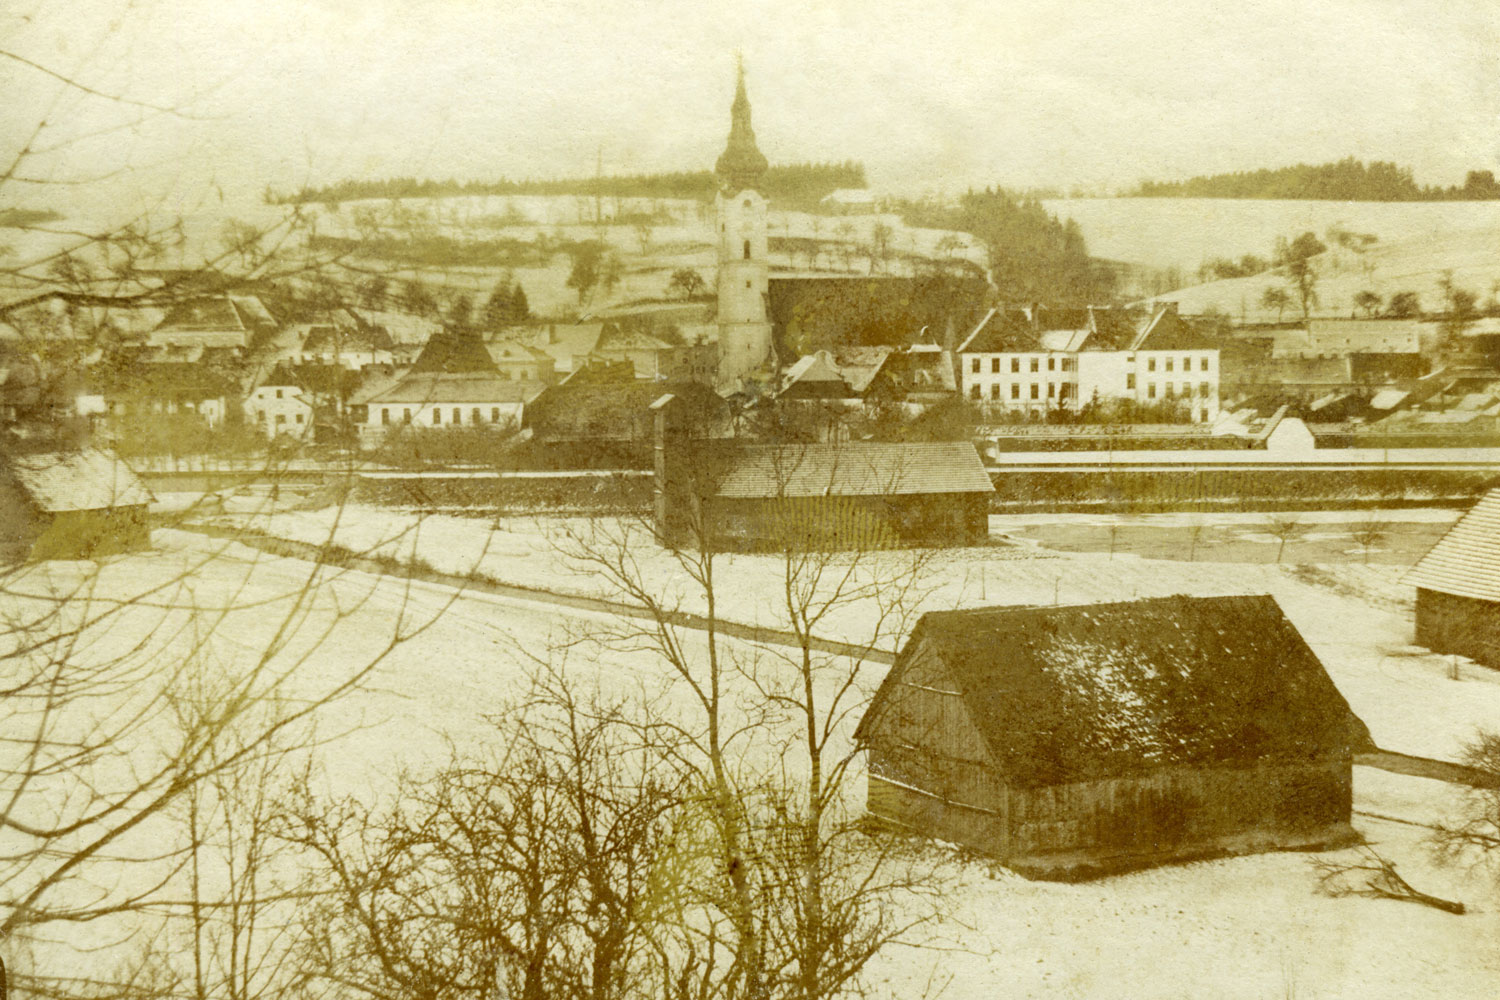 Před městem hned louky a pole, mezi nimi často rozvodněná řeka Trattnach: Grieskirchen v 19. století.